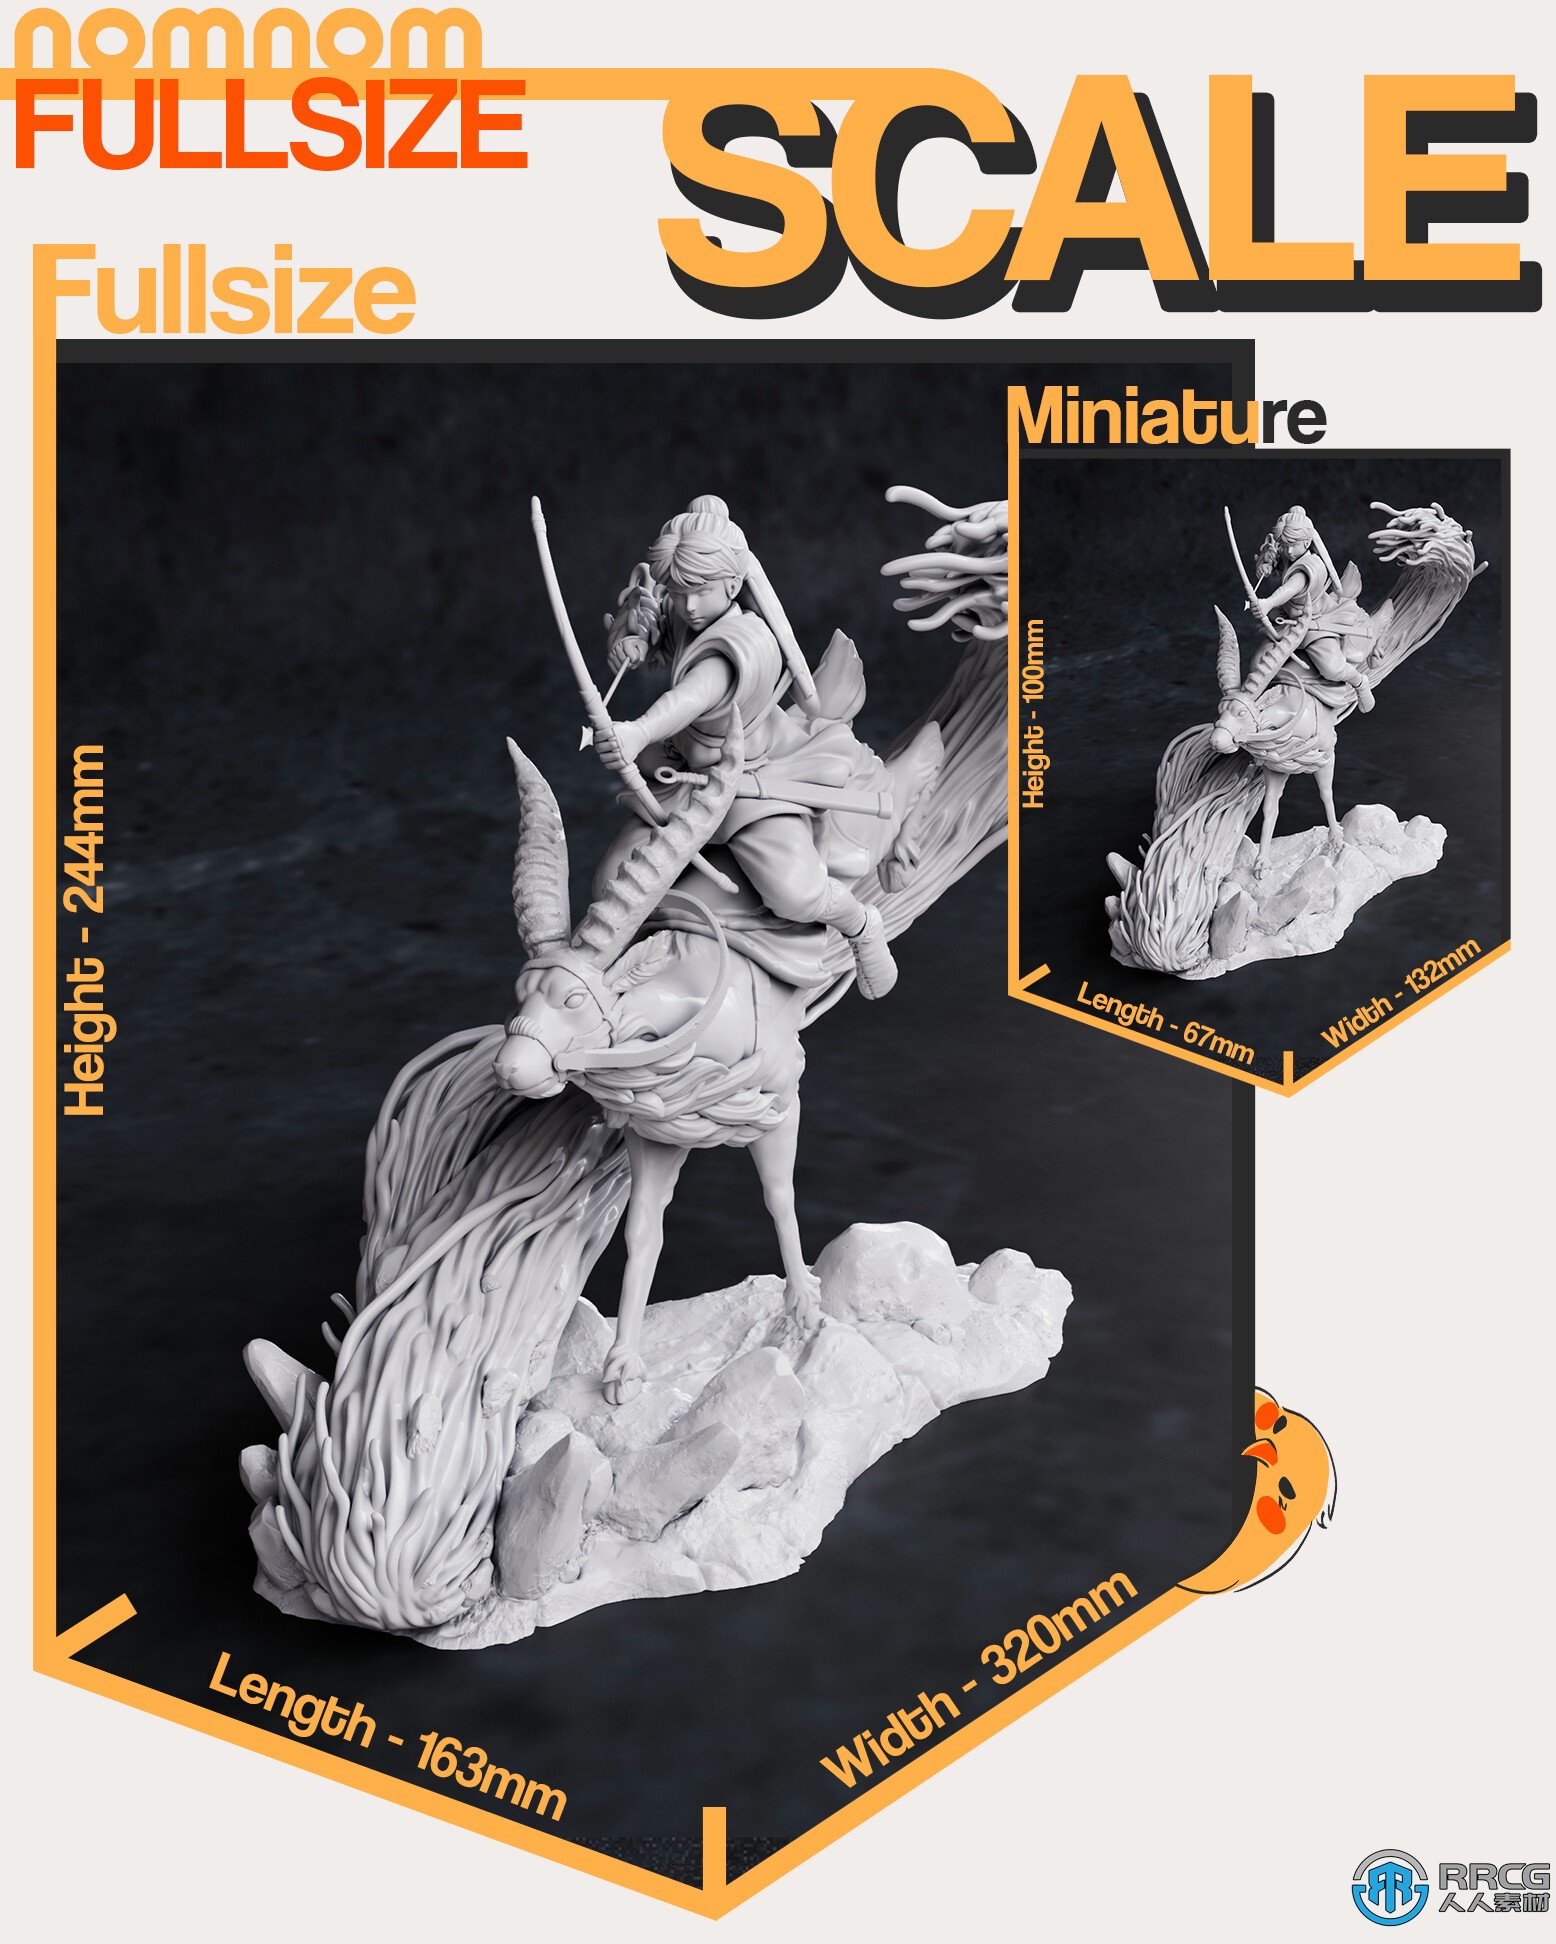 阿席达卡《幽灵公主》动画角色雕塑3D打印模型